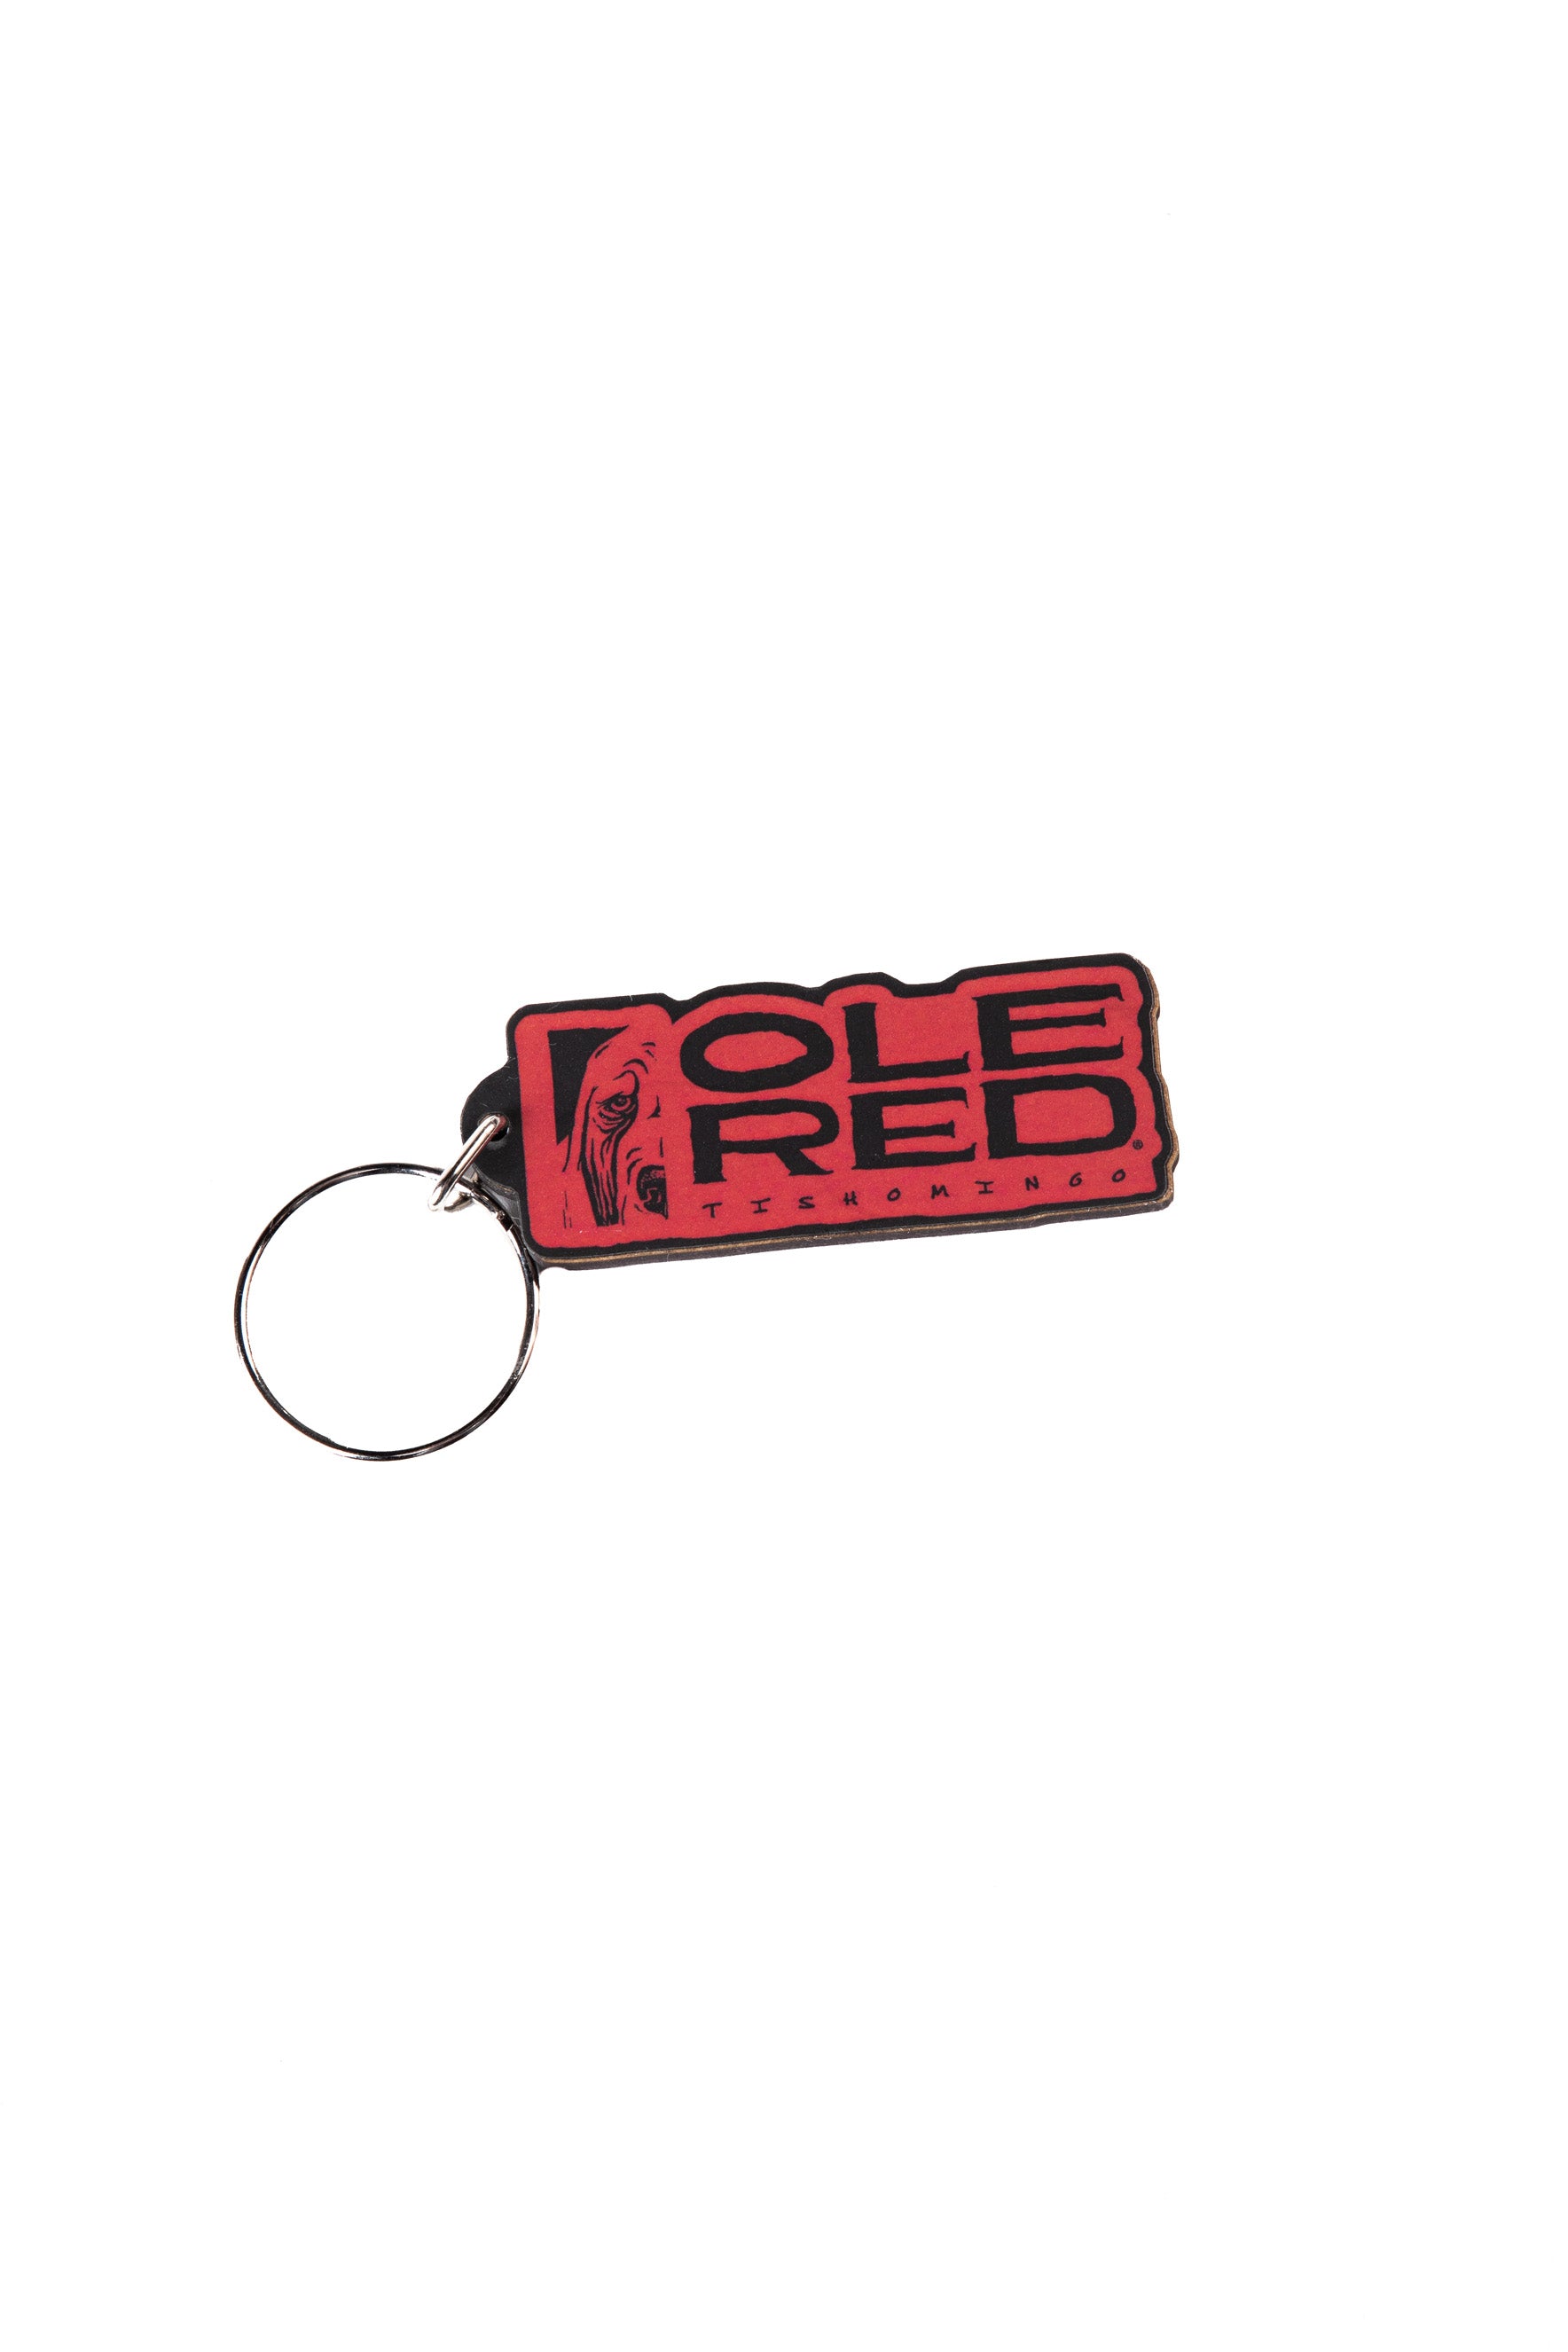 Ole Red Tishomingo Logo Keychain